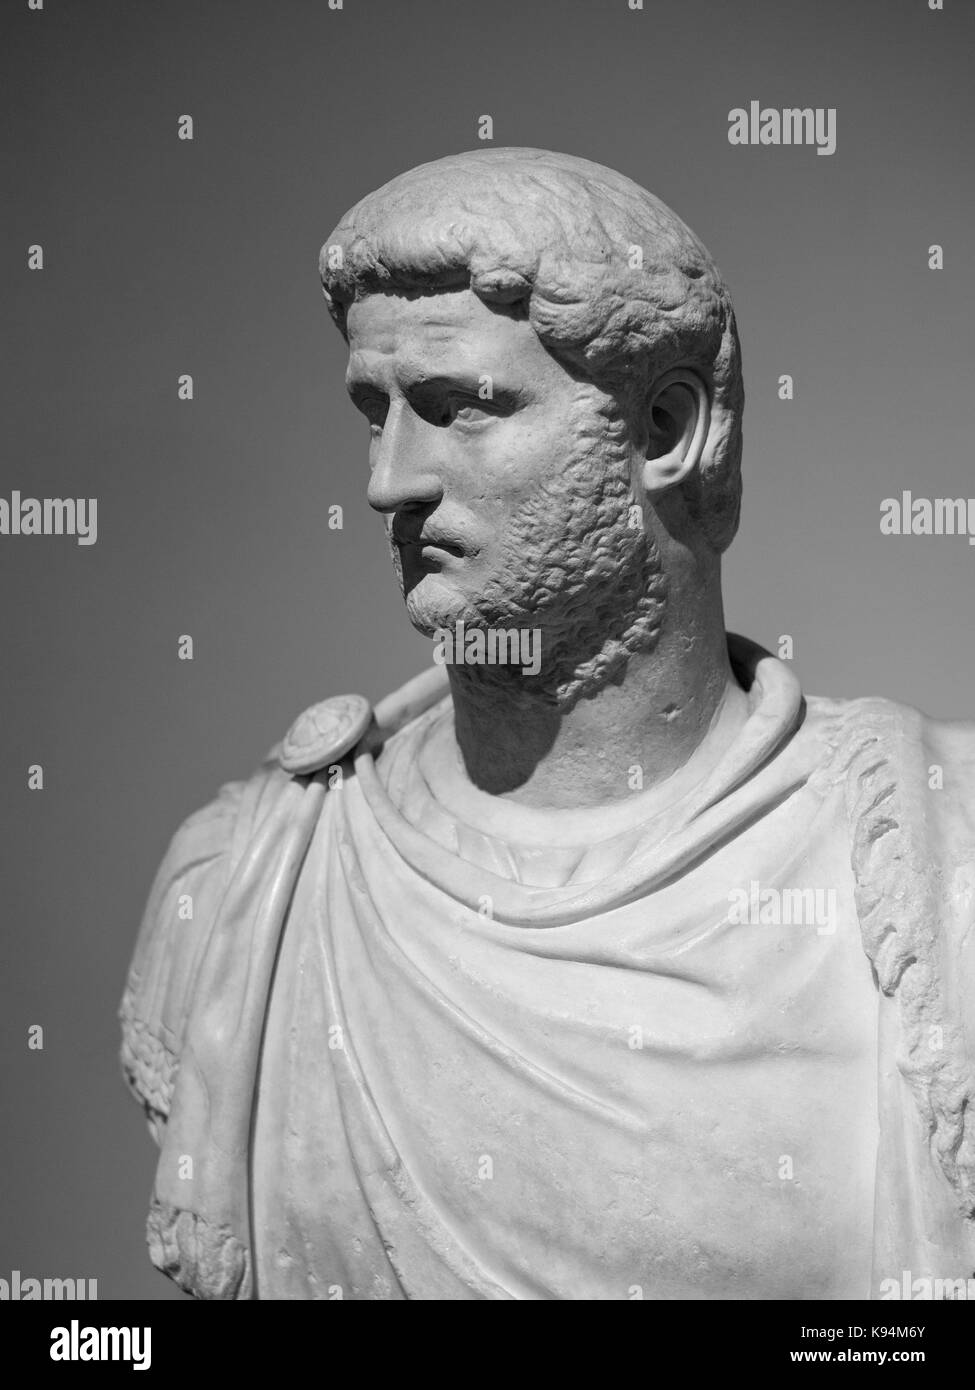 Rome. L'Italie. Portrait buste de l'empereur romain Gallien (218-268 AD), 3e C A.D. Museo Nazionale Romano. Palazzo Altemps. Publius Licinius Egnatius Ga Banque D'Images